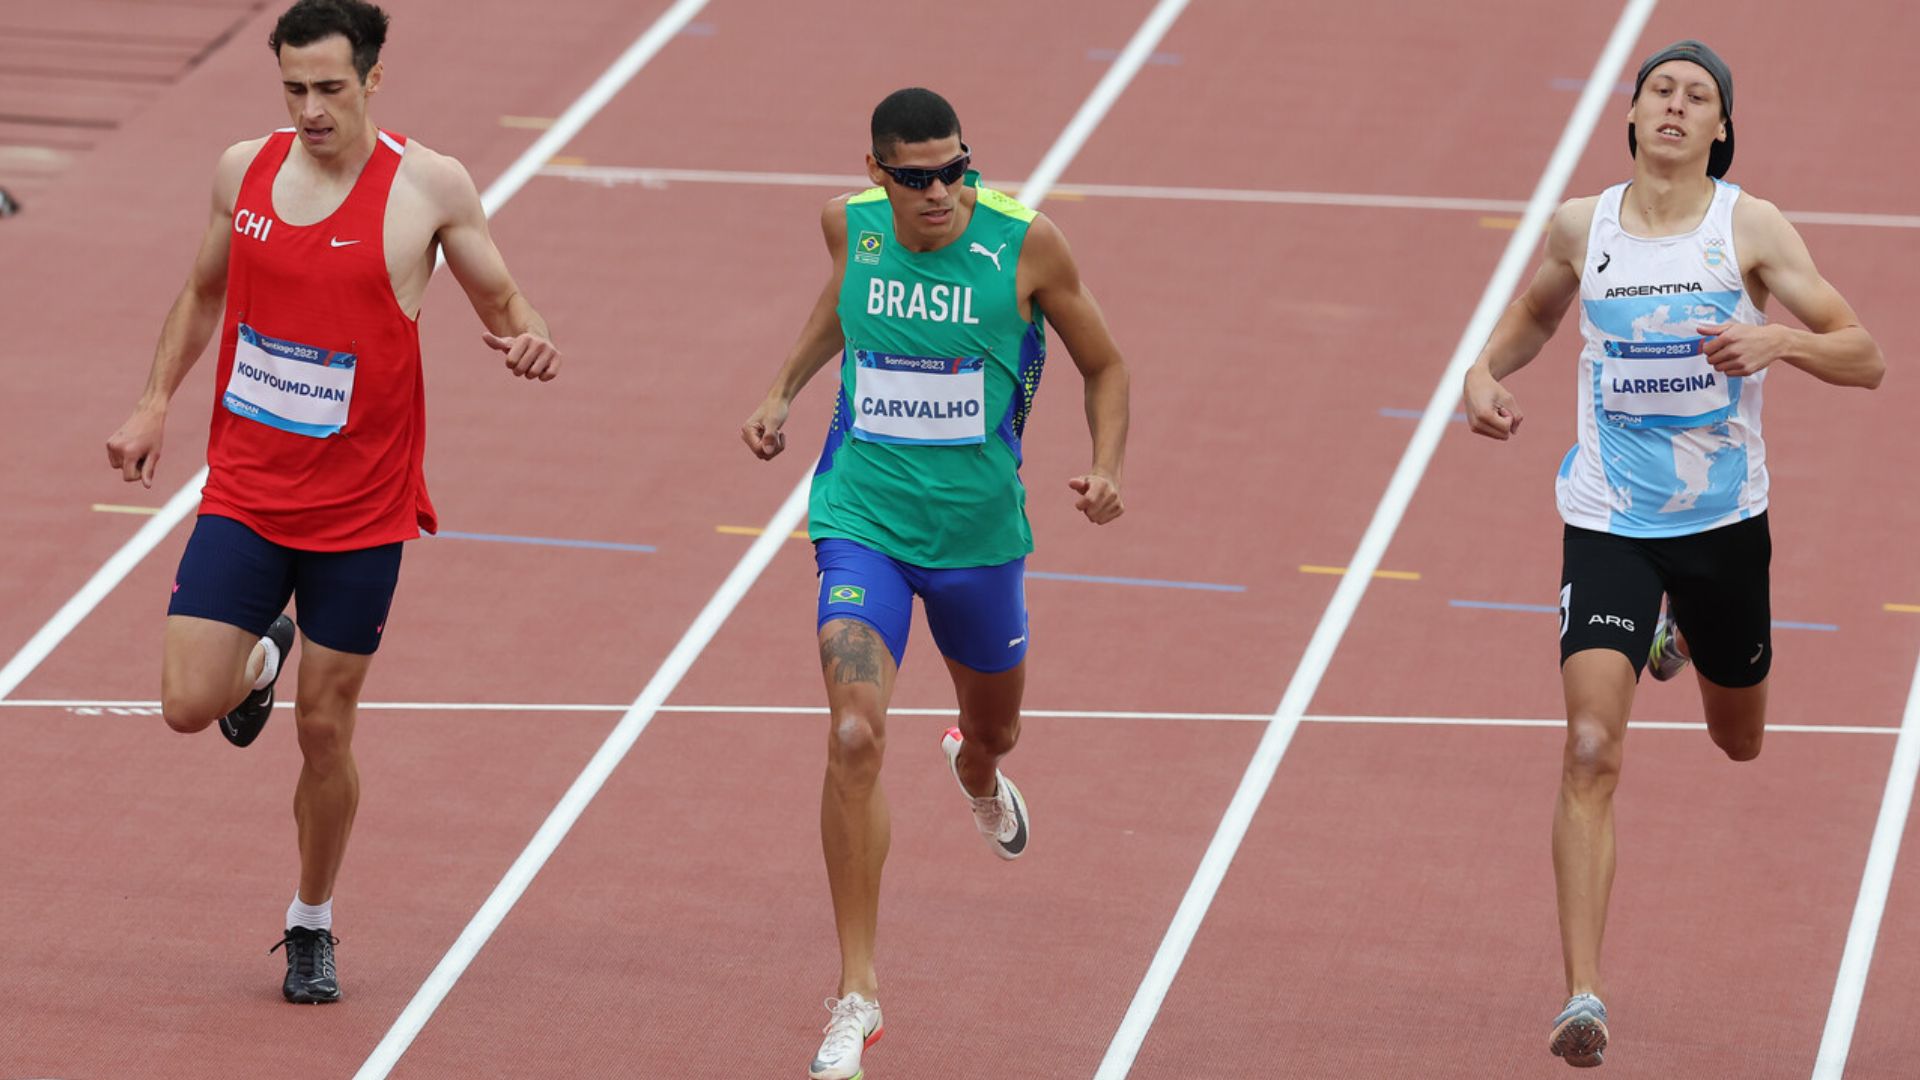 Atletismo: chileno Martín Kouyoumdian peleará medalla en los 400 metros